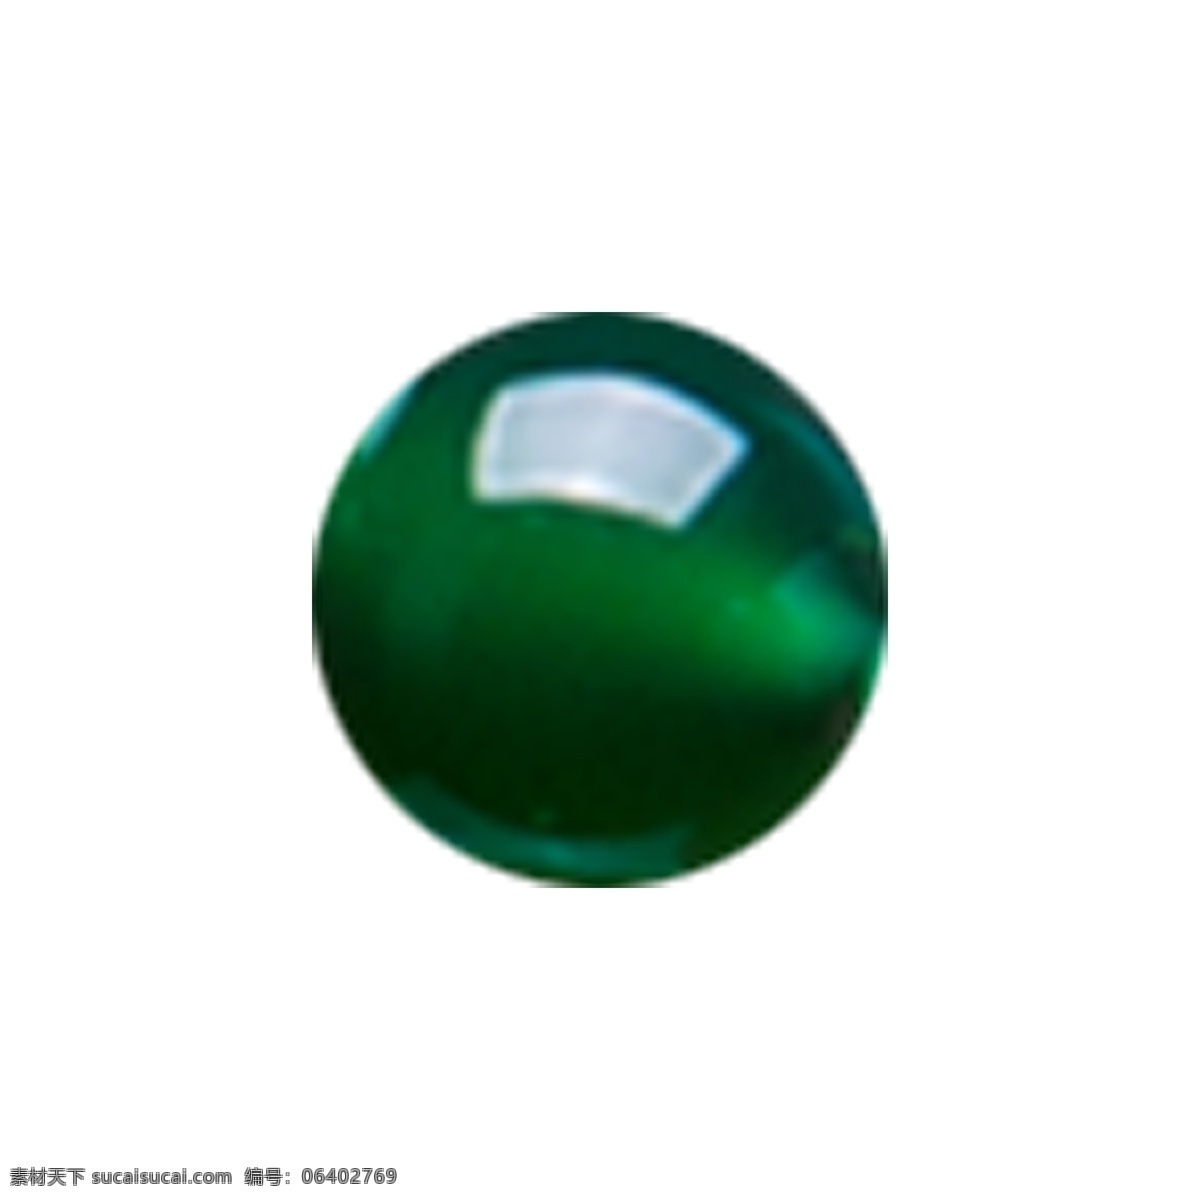 绿色 半 透明 珠子 玛瑙 玉石 半透明 玉髓 串珠 圆润 宝石 项链 手链 首饰 大气 大方 唯美 透亮